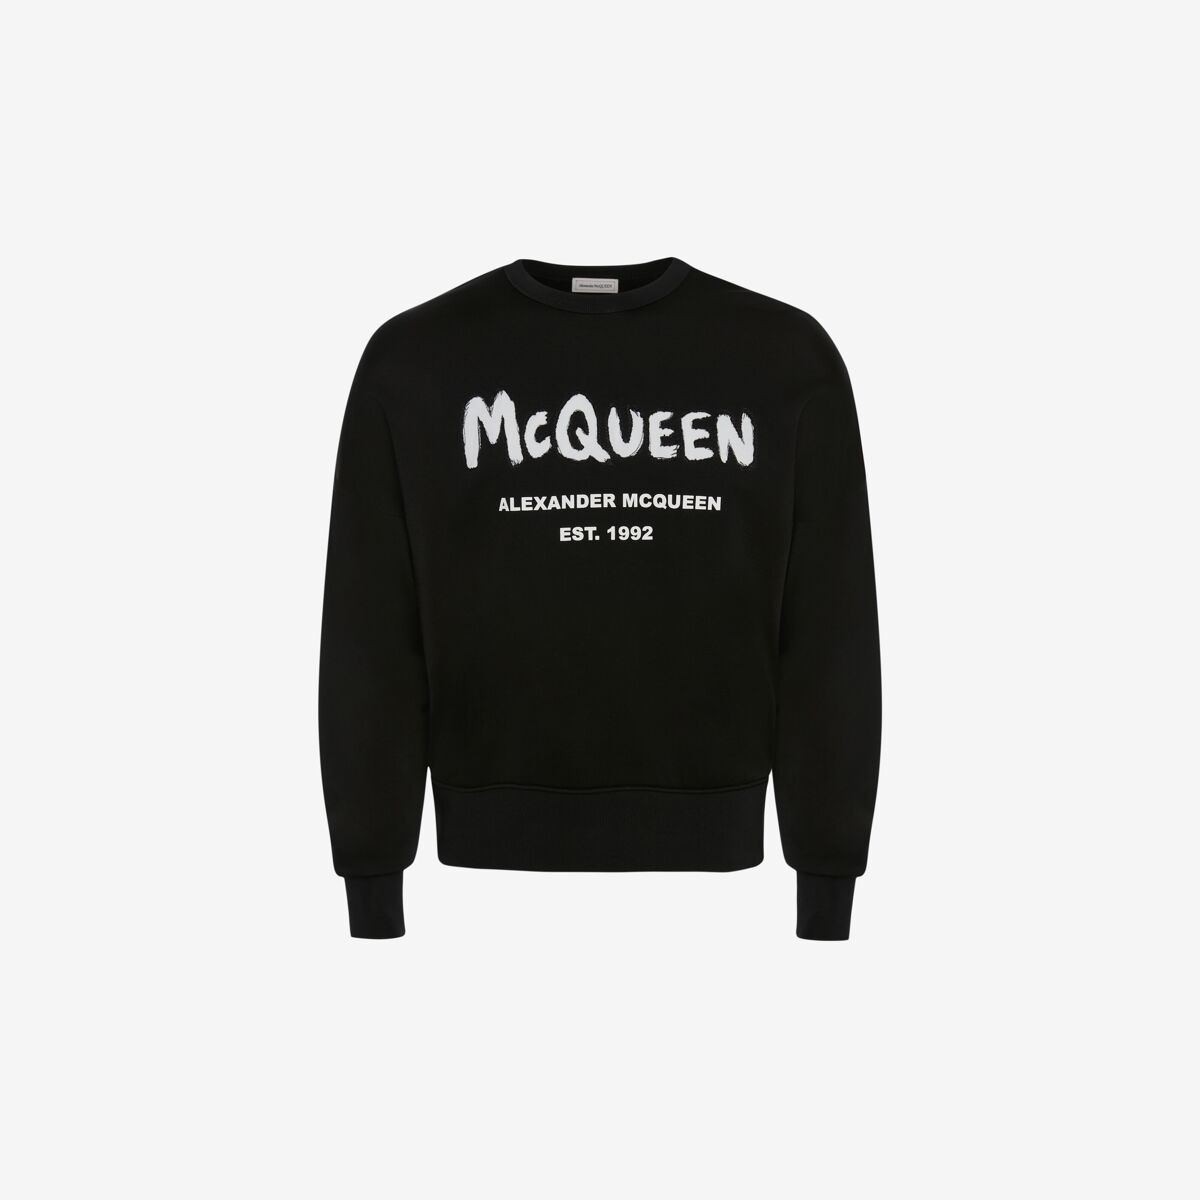 ALEXANDER MCQUEEN McQueen Graffiti Oversized Sweatshirt